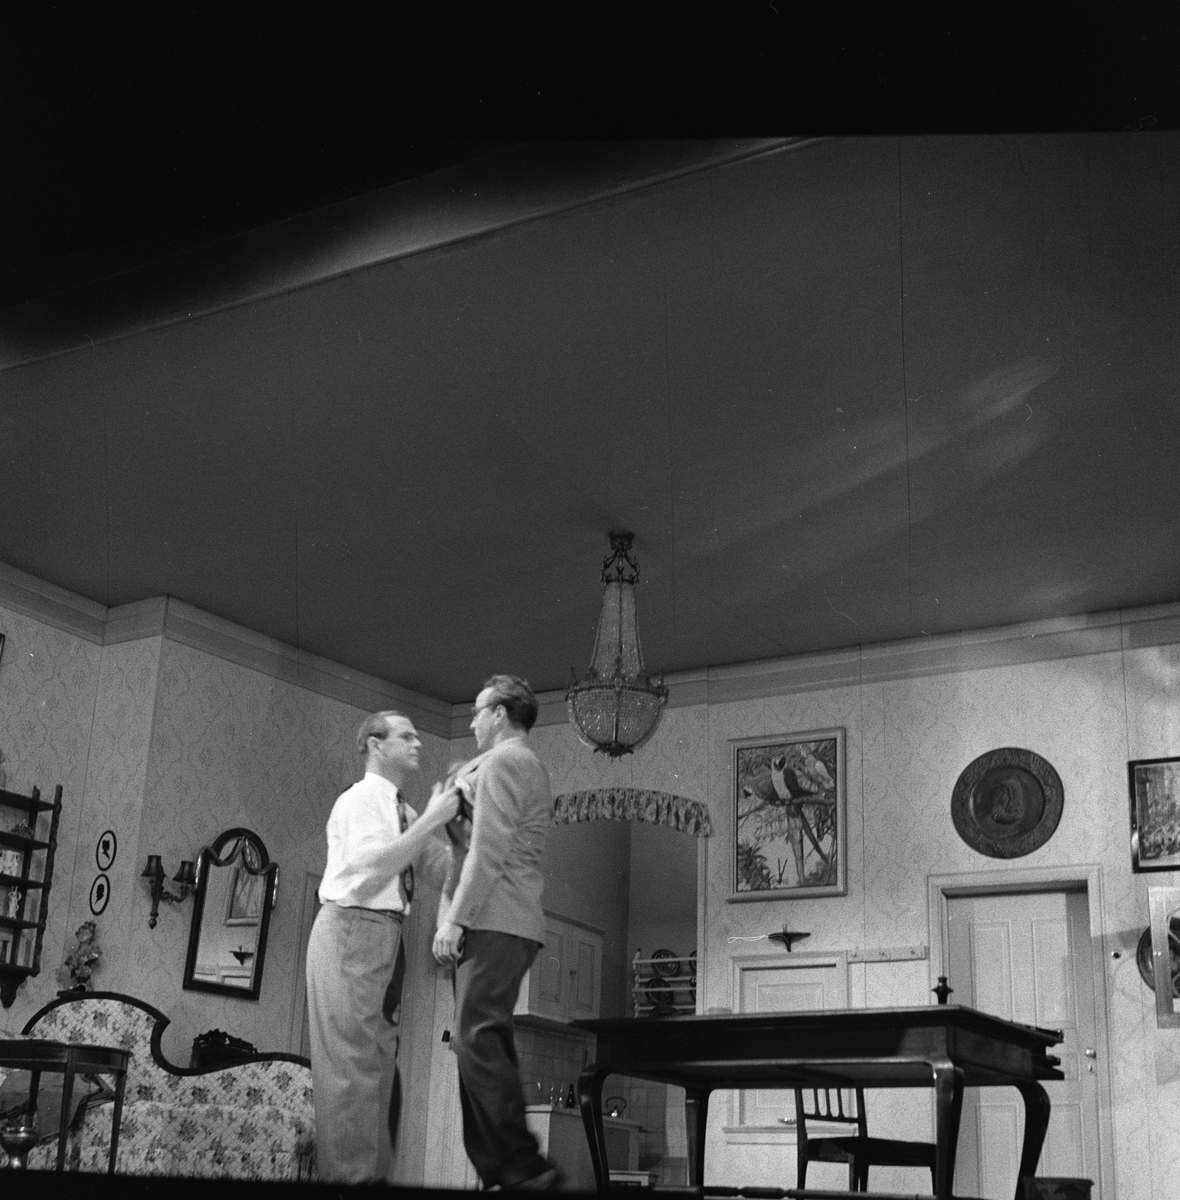 Oppsetning av "Begge eller ingen" på Centralteatret. Flere skuespillere sammen på scenen. Fotografert 21. september 1956.